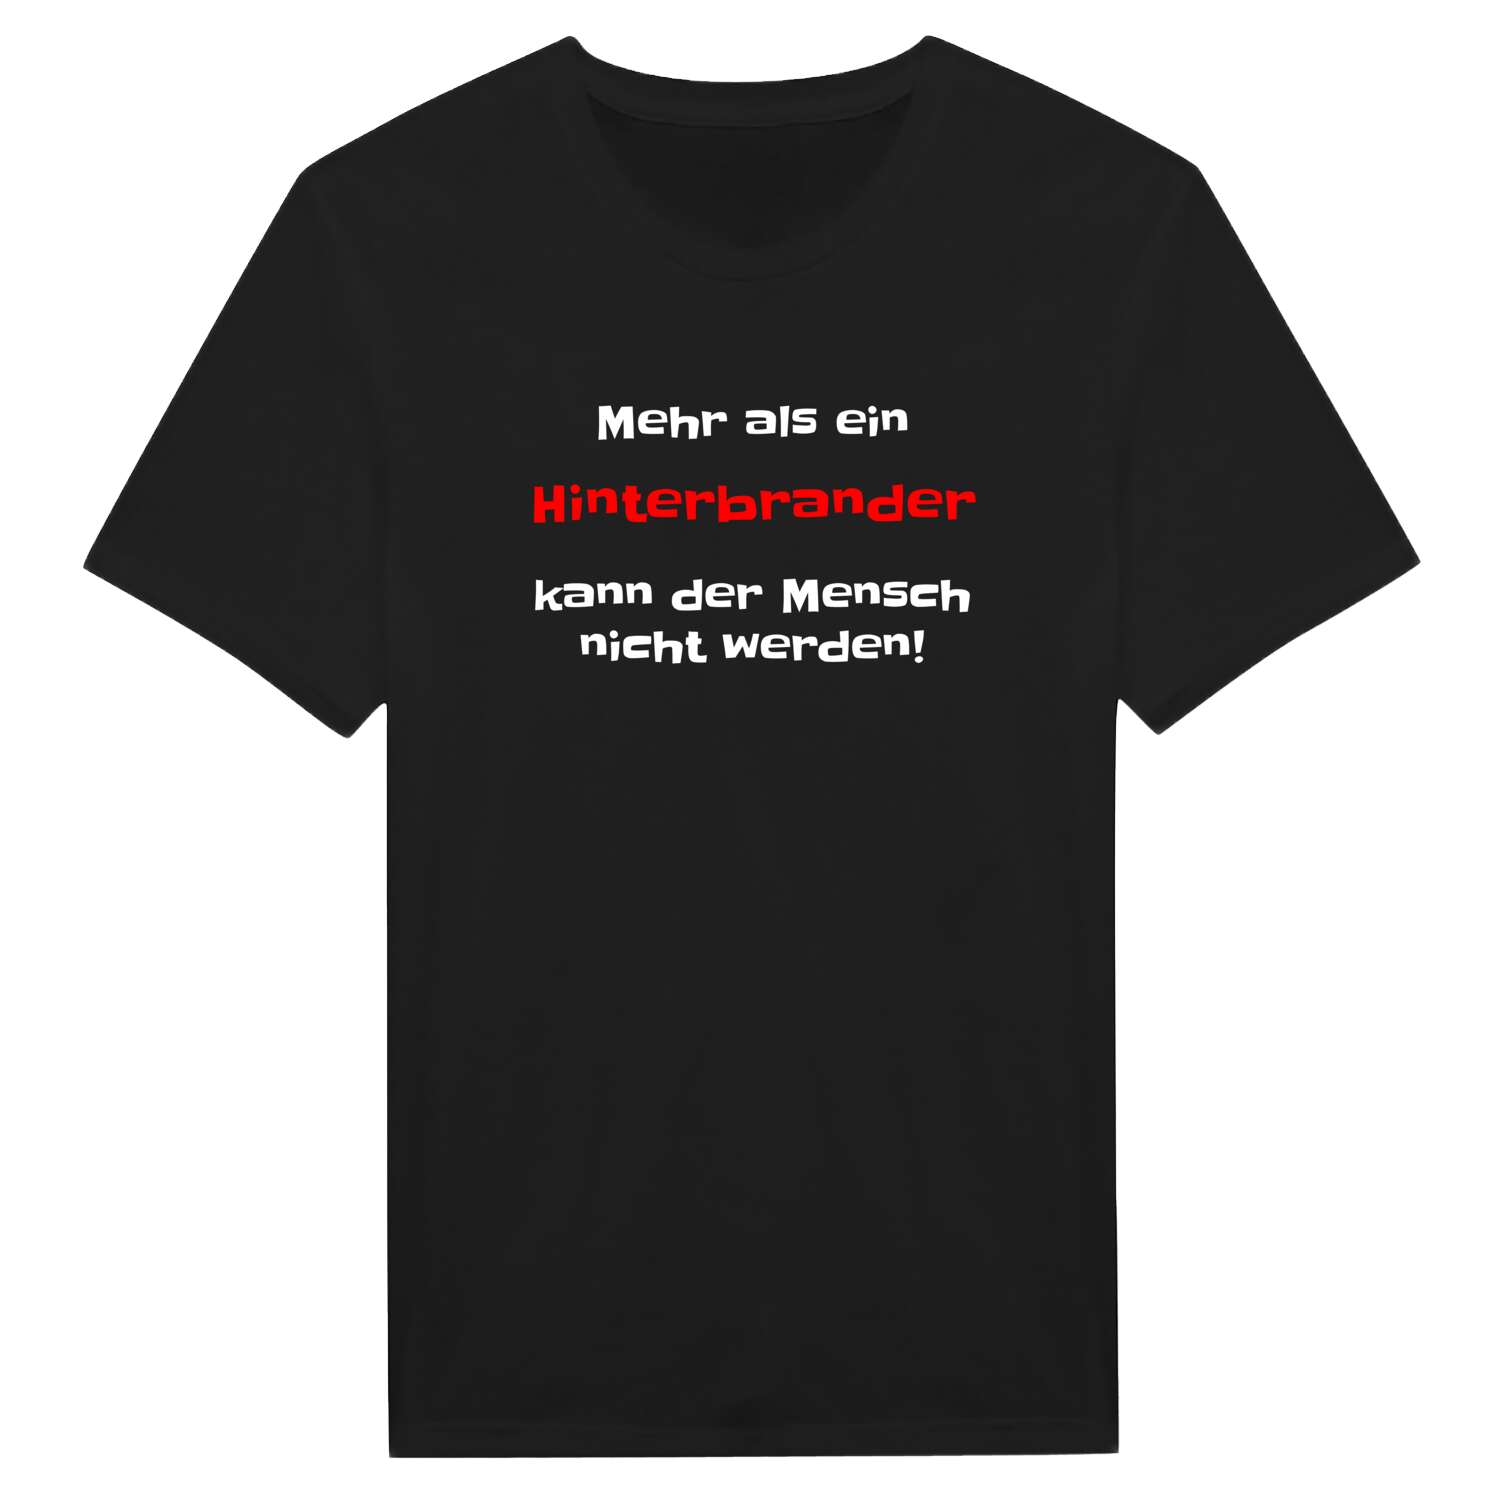 Hinterbrand T-Shirt »Mehr als ein«